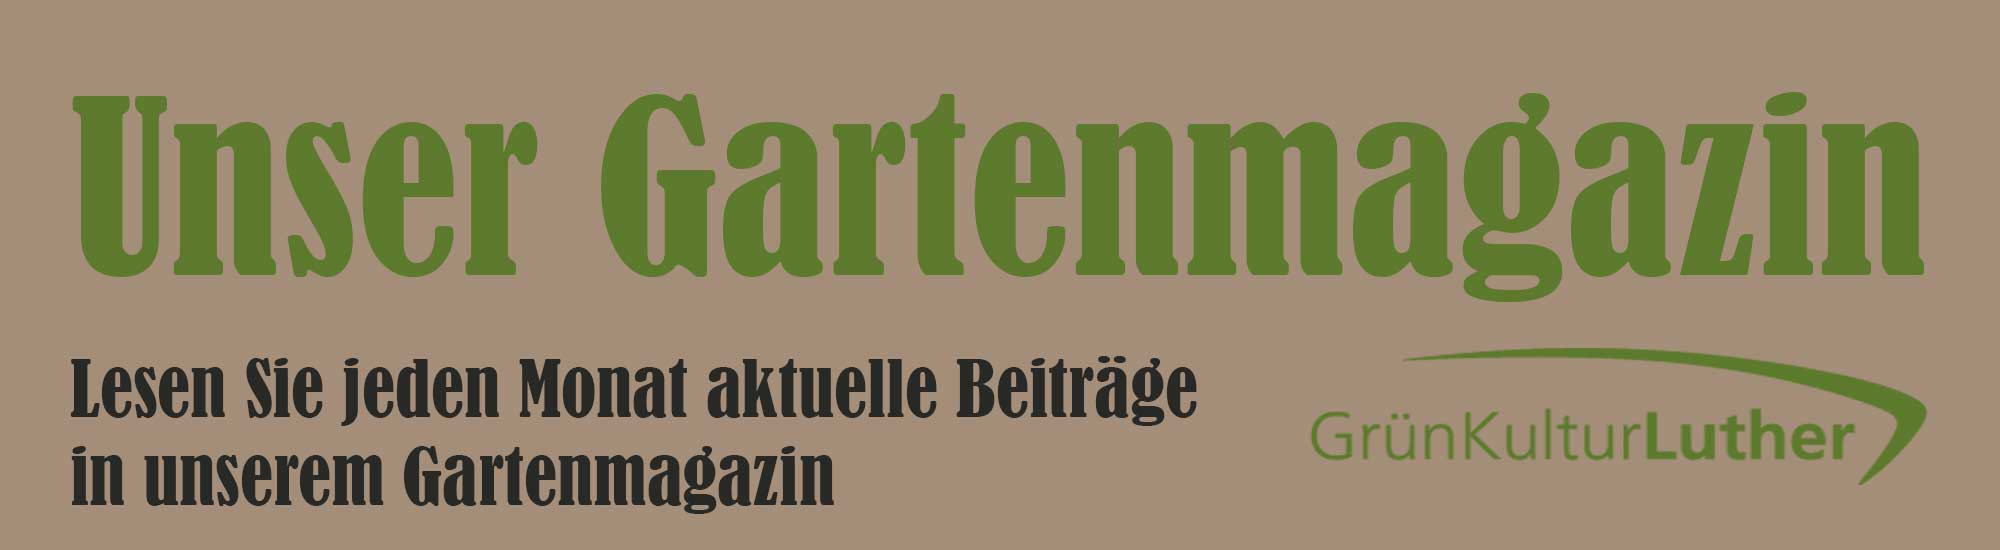 Gartenmagazin GrünKultur Luther